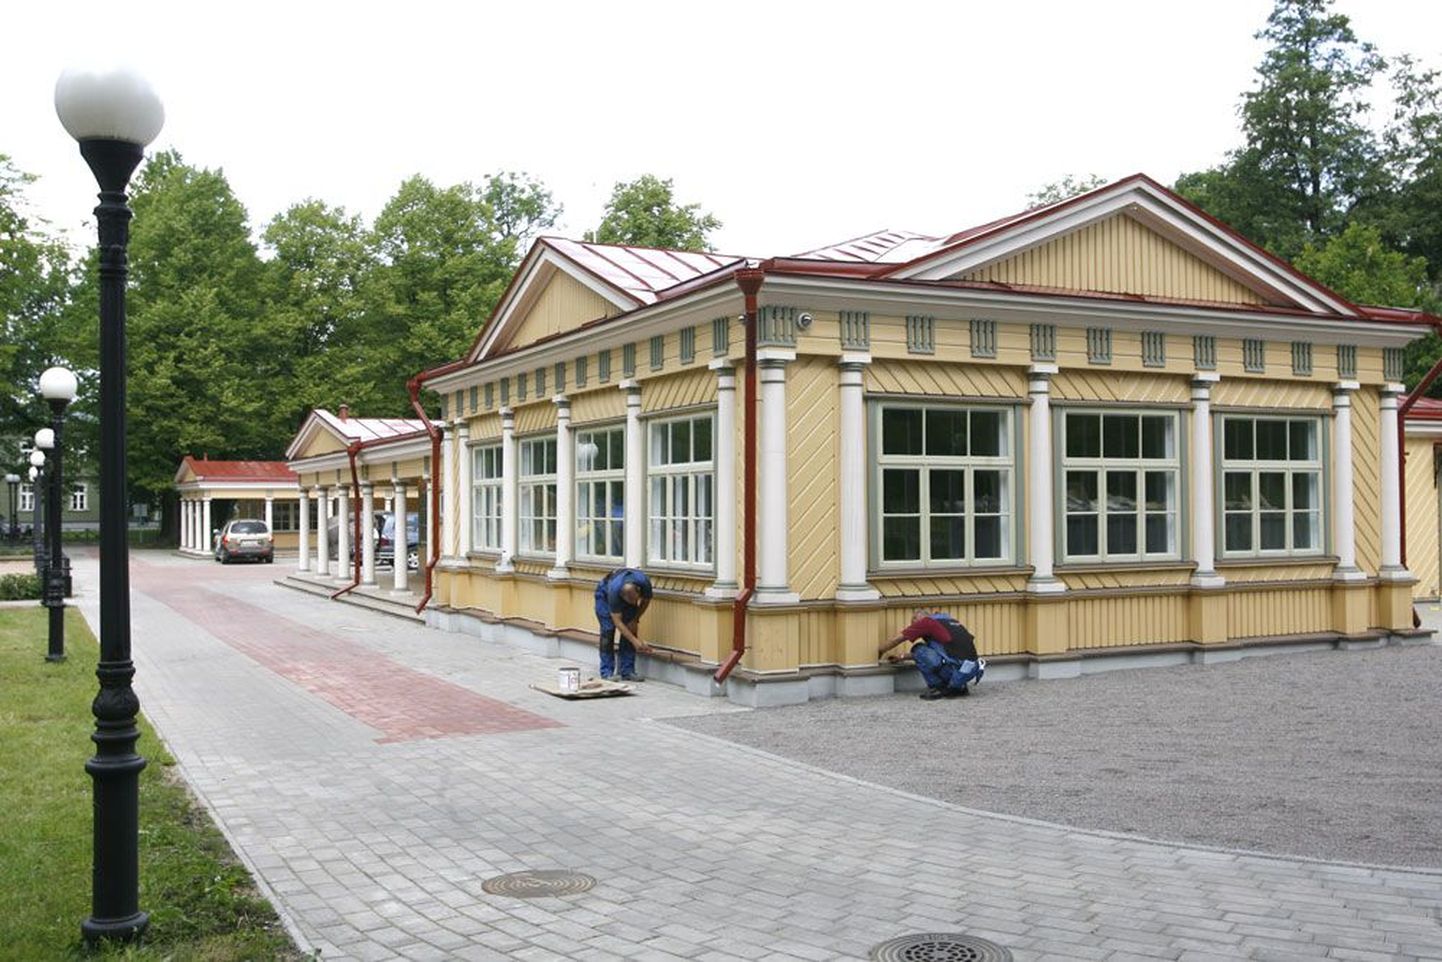 Rahvasuus lasteparadiisina tuntud paviljon avatakse taas, kuid nüüd juba linnamuuseumi filiaalina.